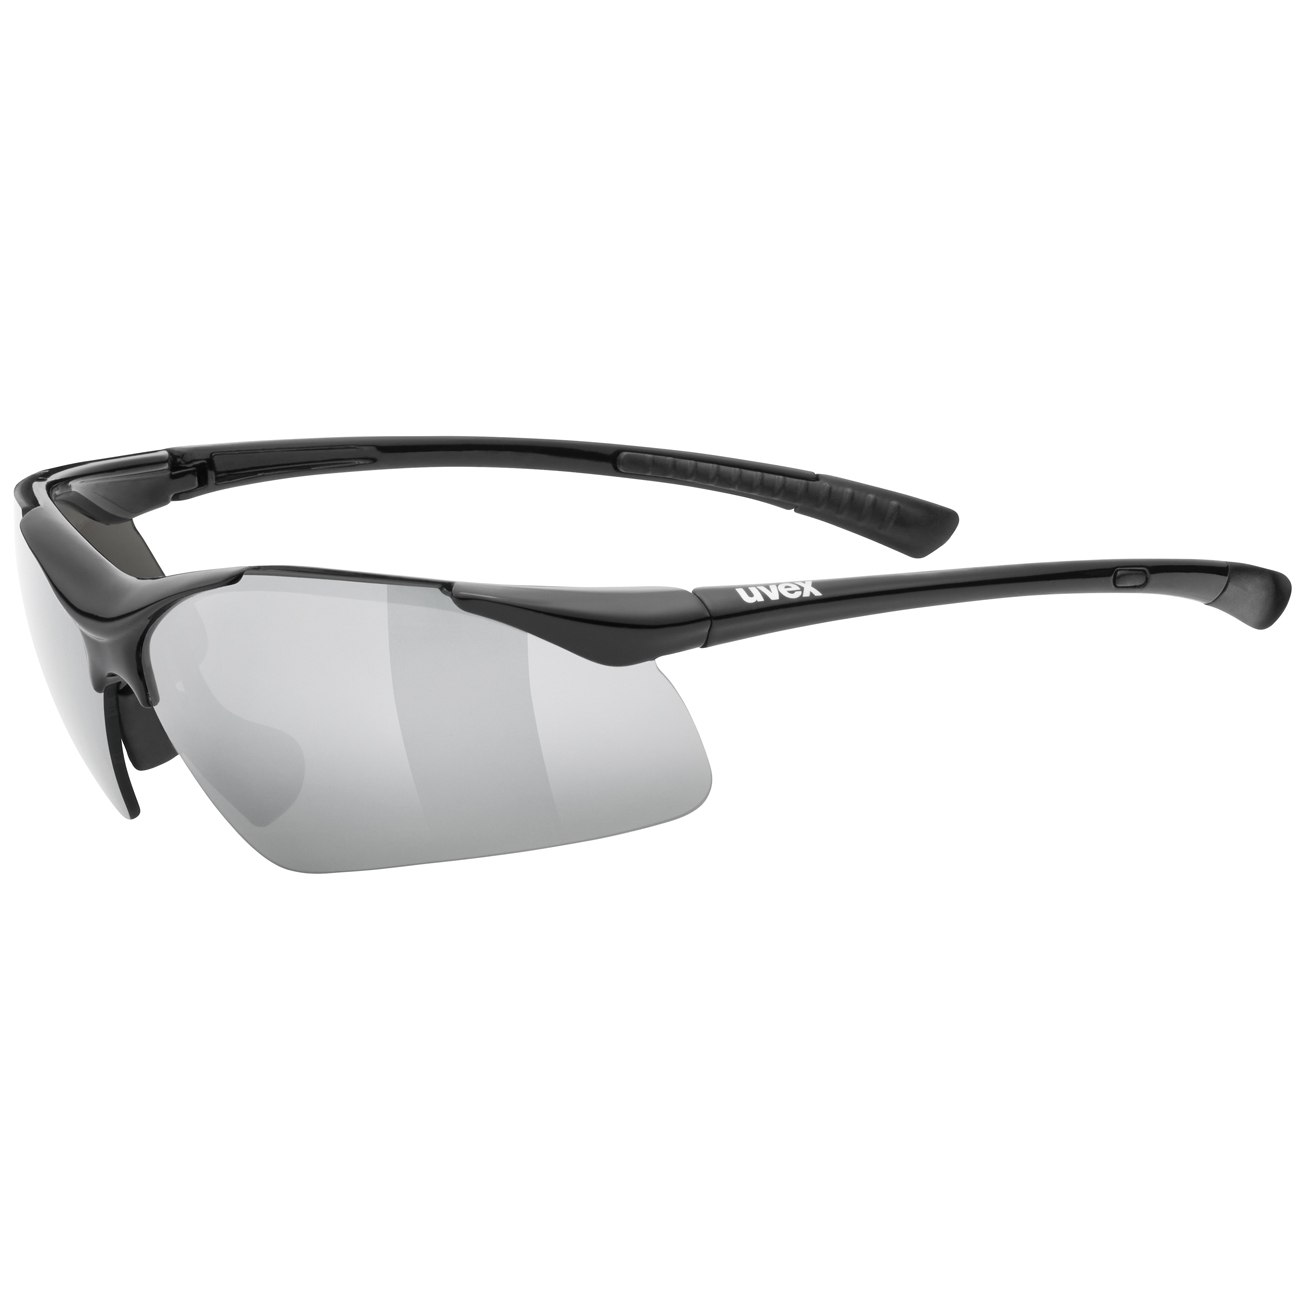 Produktbild von Uvex sportstyle 223 Brille - black/litemirror silver